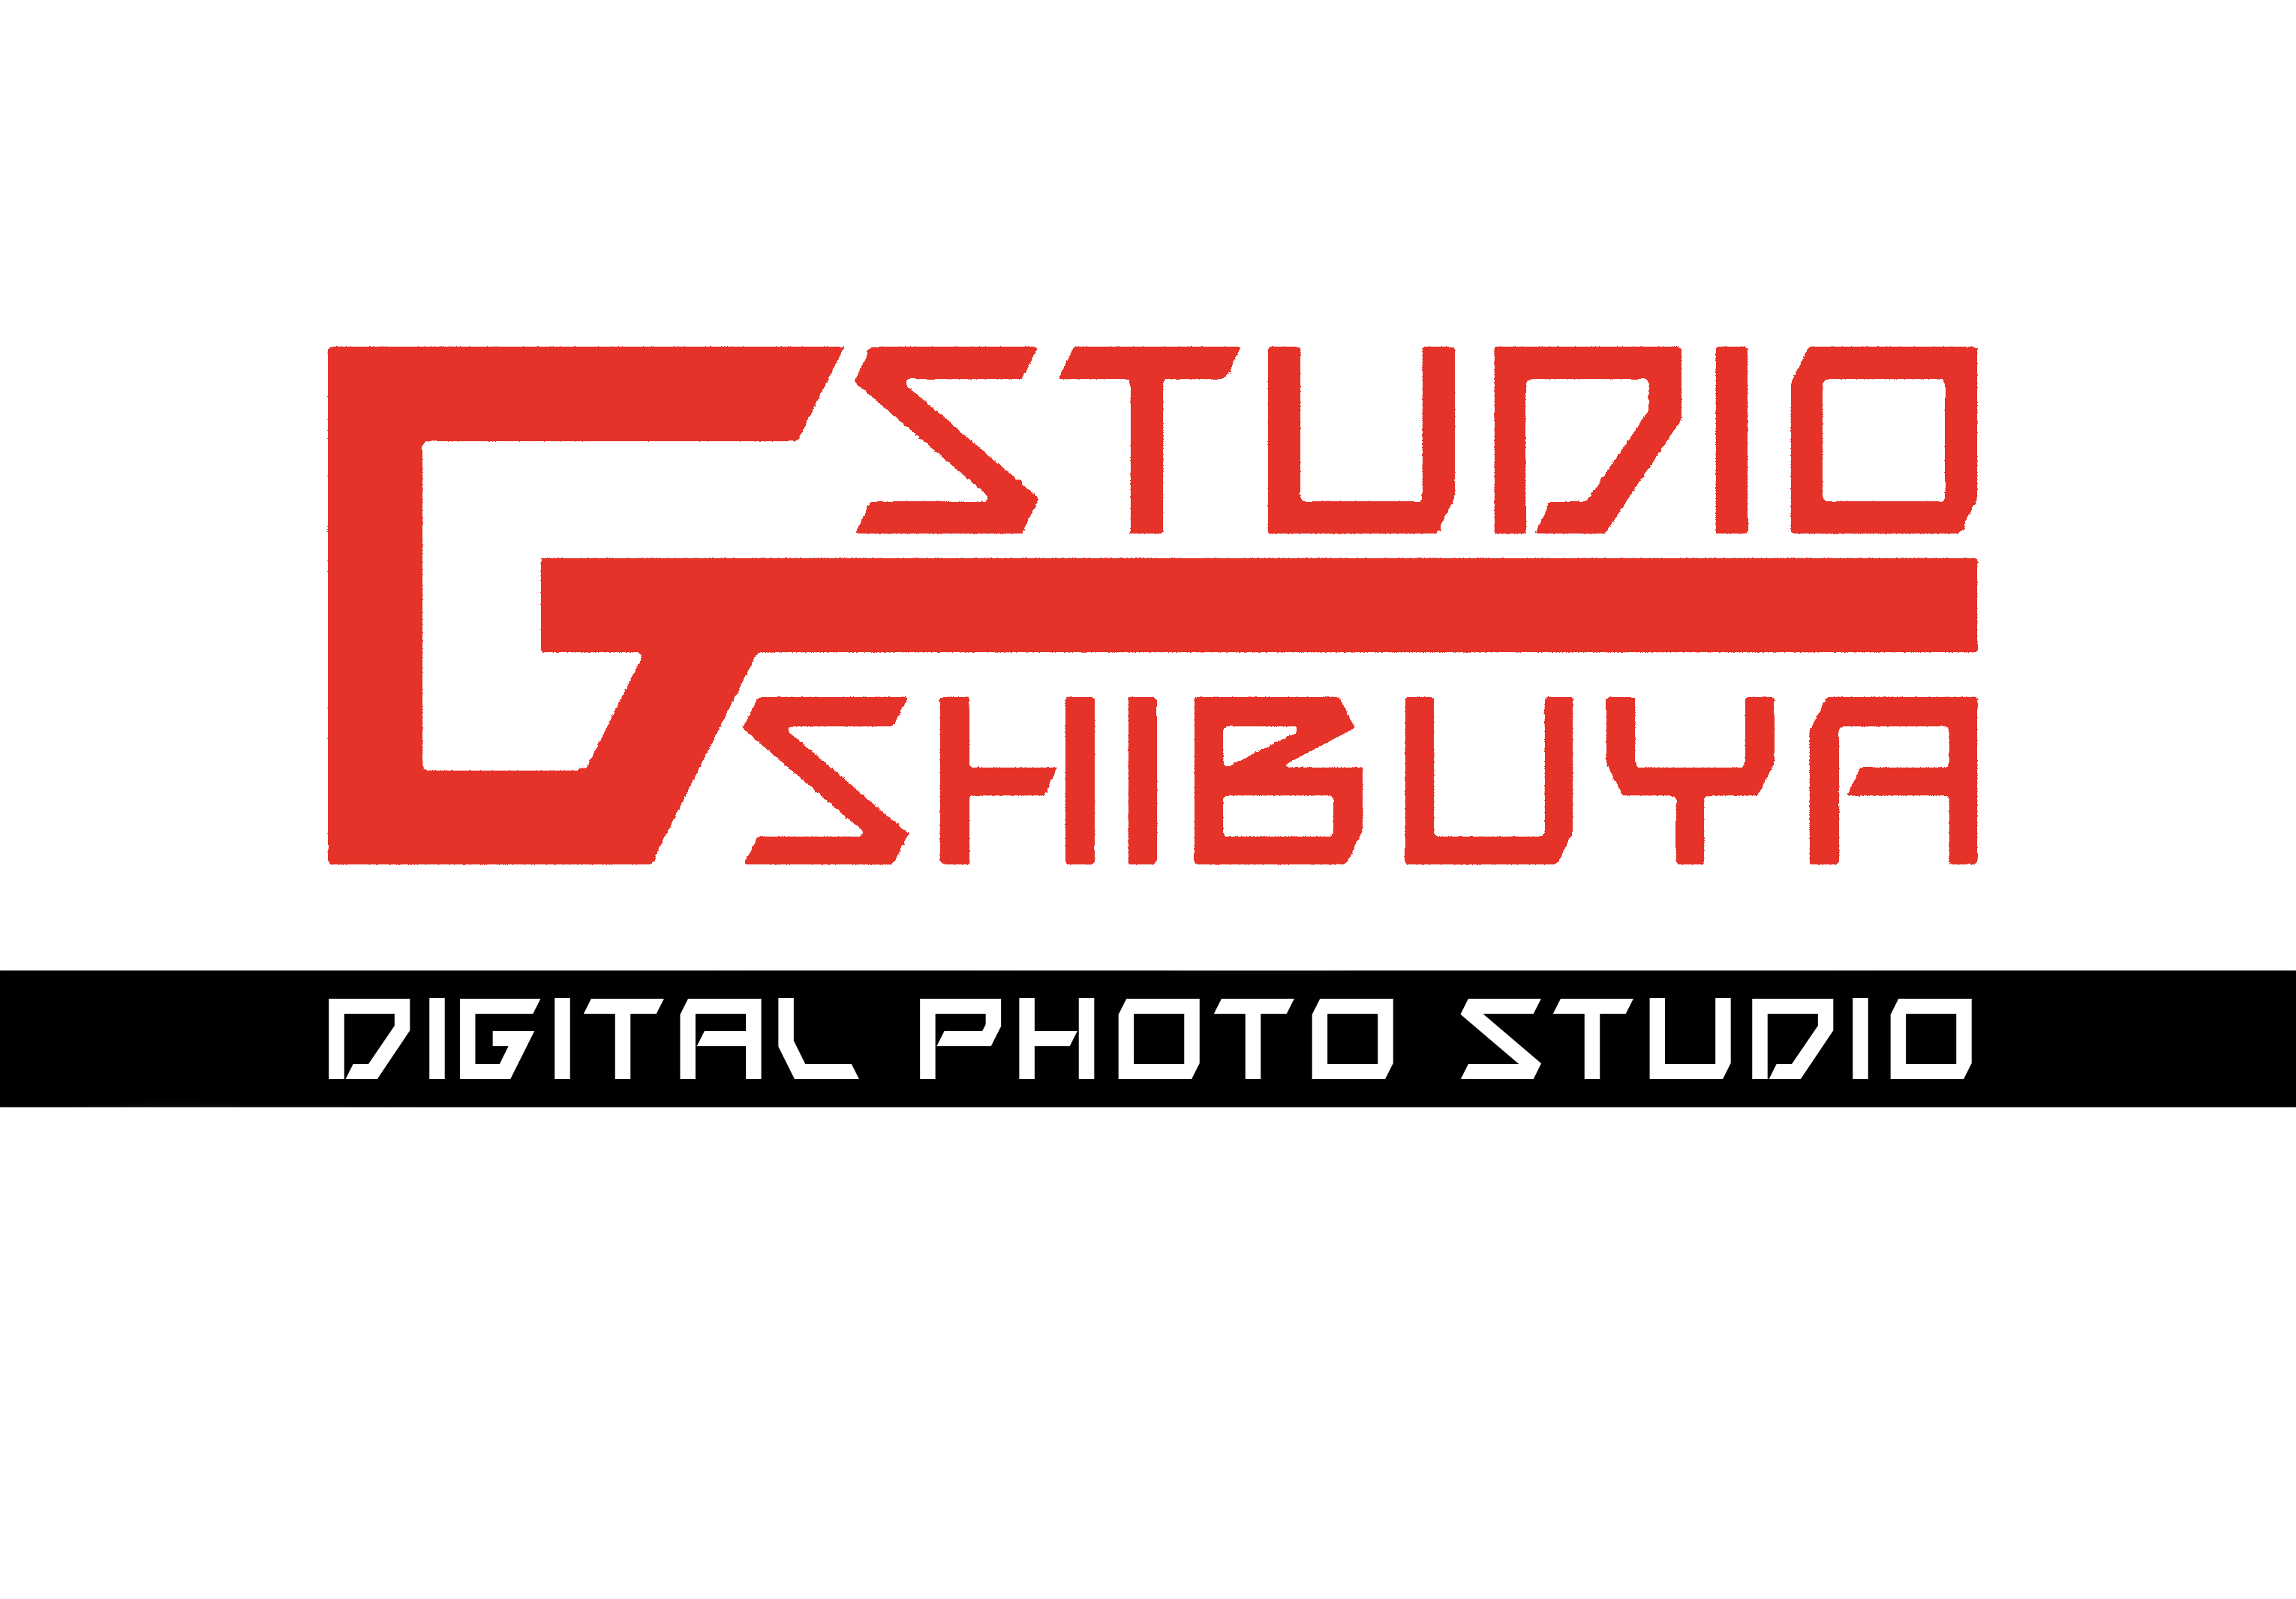 渋谷道玄坂上ガストの9階‼
デジタルフォトスタジオです。
写真撮影、修正、ポスターフライヤー制作等何でもお任せください(^^)
魂を込めて取り組みます。

お問い合わせはこちら
03-6416-9932